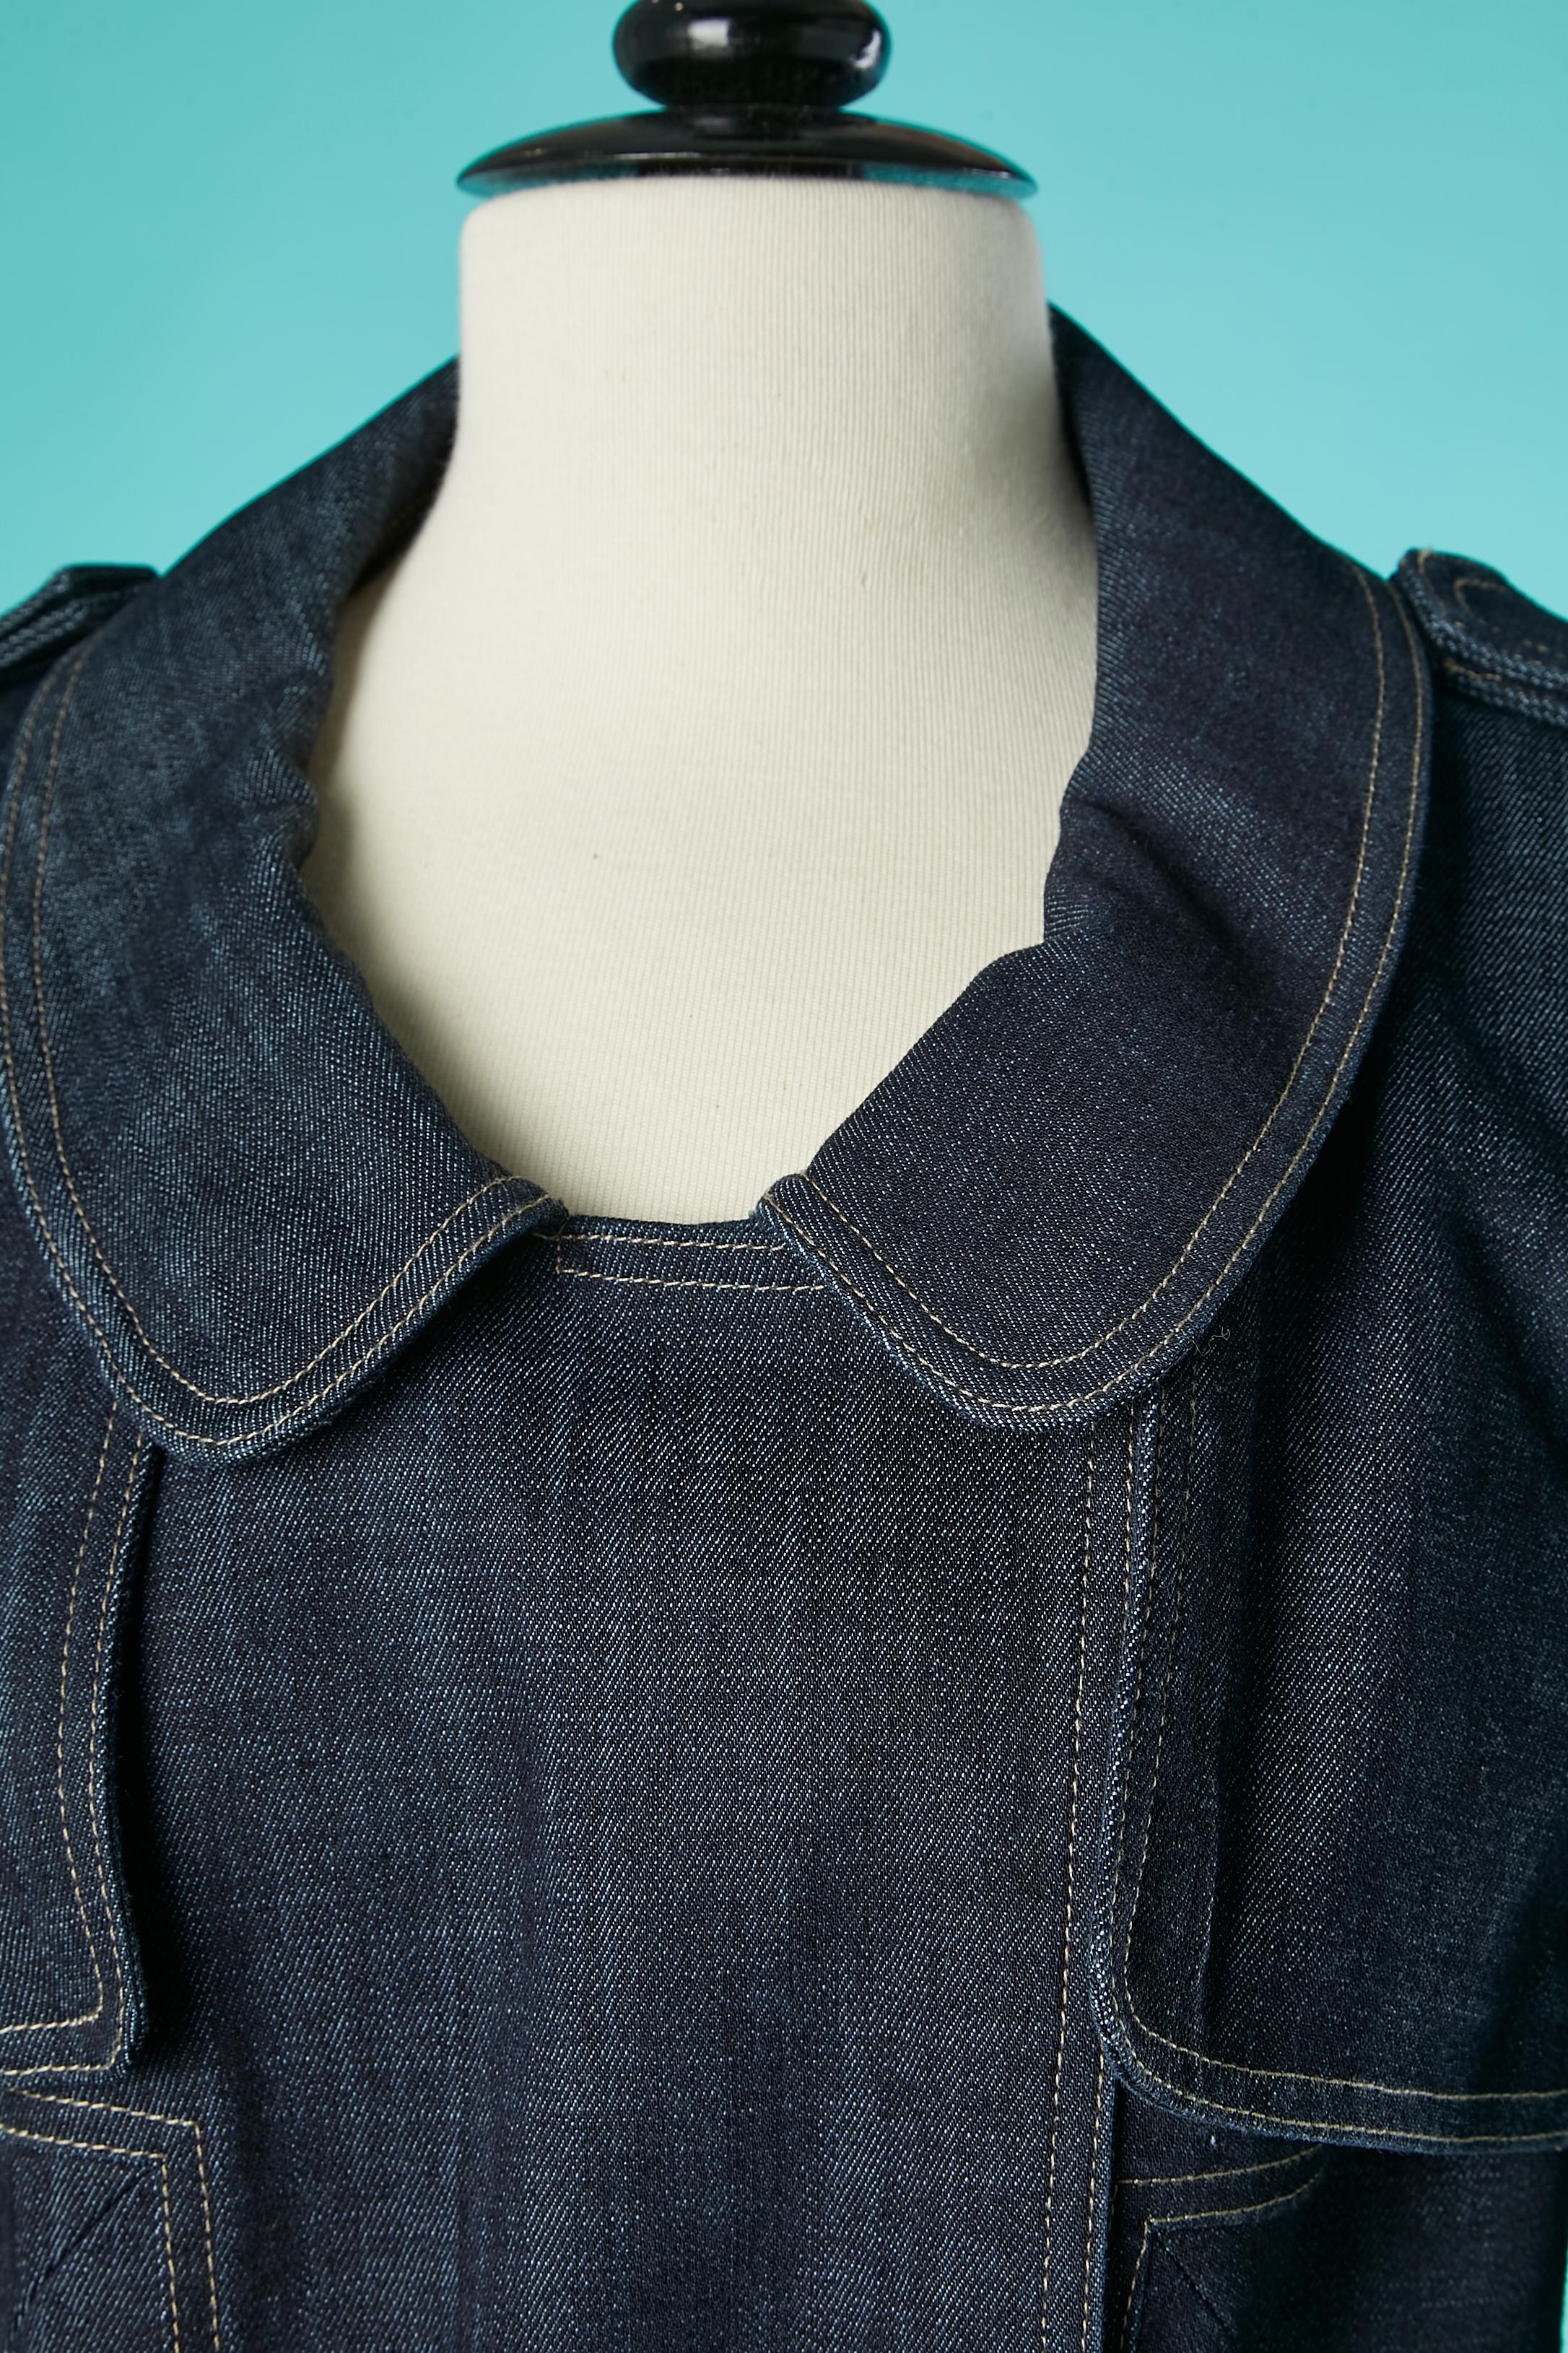 Zweireihige Jeansjacke im Trenchcoat-Stil. Zusammensetzung des Hauptgewebes: 74% Baumwolle, 25% Polyester, 1% Lycra. Baumwollfutter und Innenpaspel. Raglanärmel und offen an der Achselhöhle. Tasche, Gürtel und Gürtelschlaufe. Druckknopfverschluss.